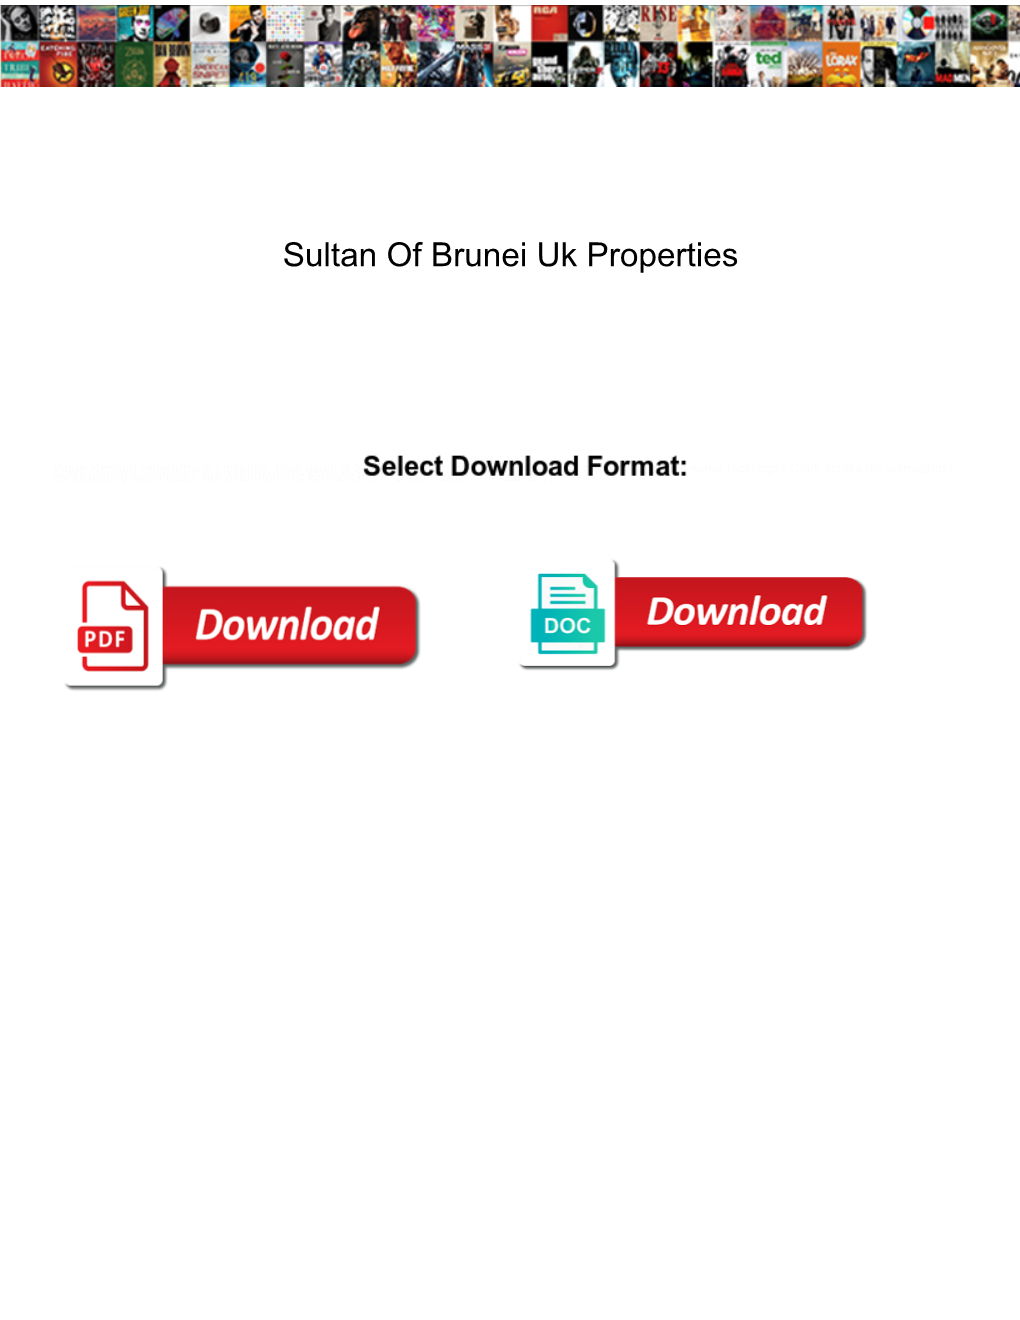 Sultan of Brunei Uk Properties